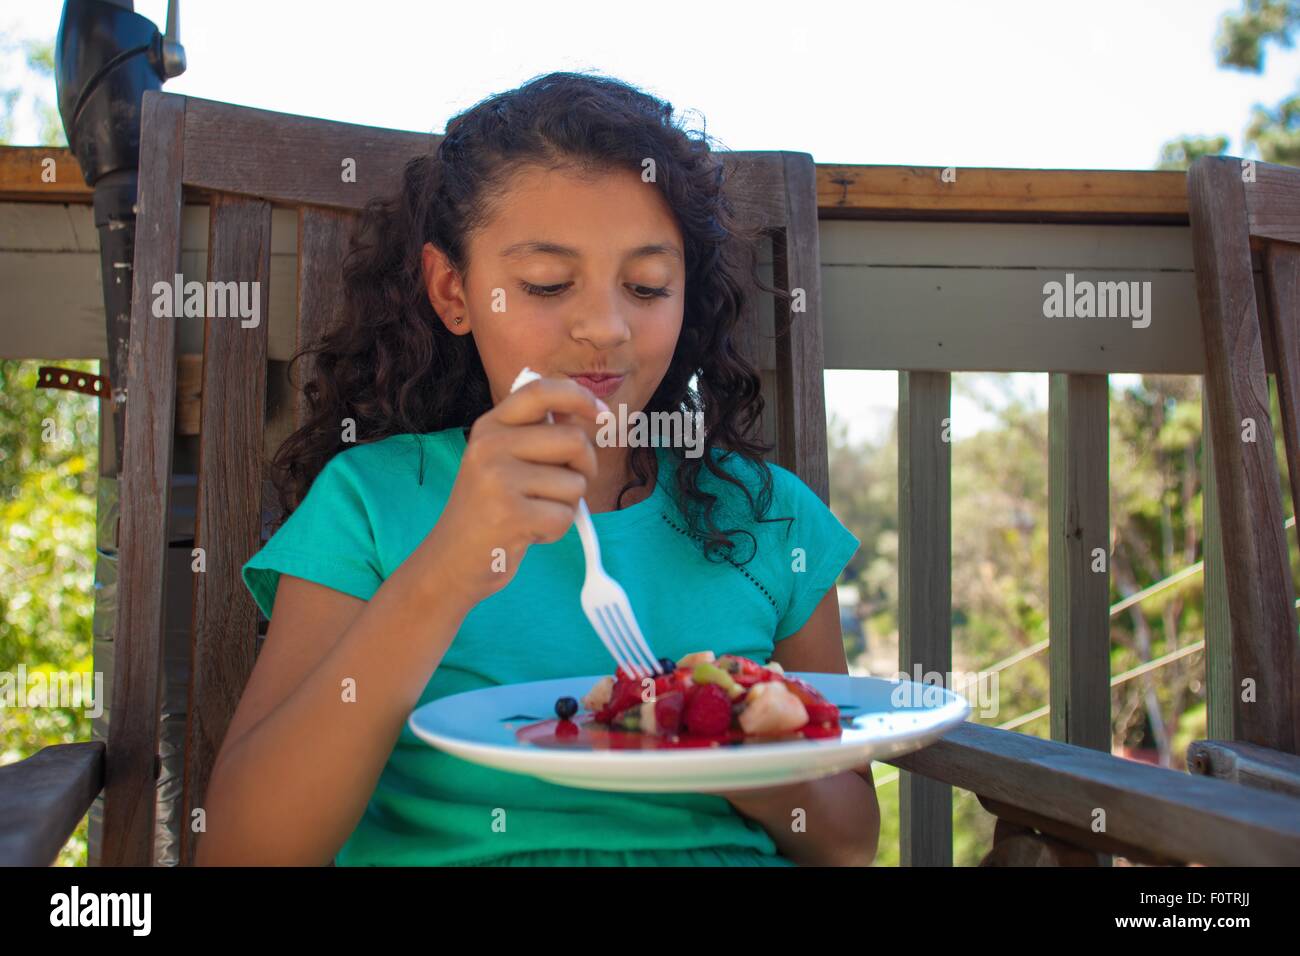 Girl eating fruit dessert on garden bench Stock Photo